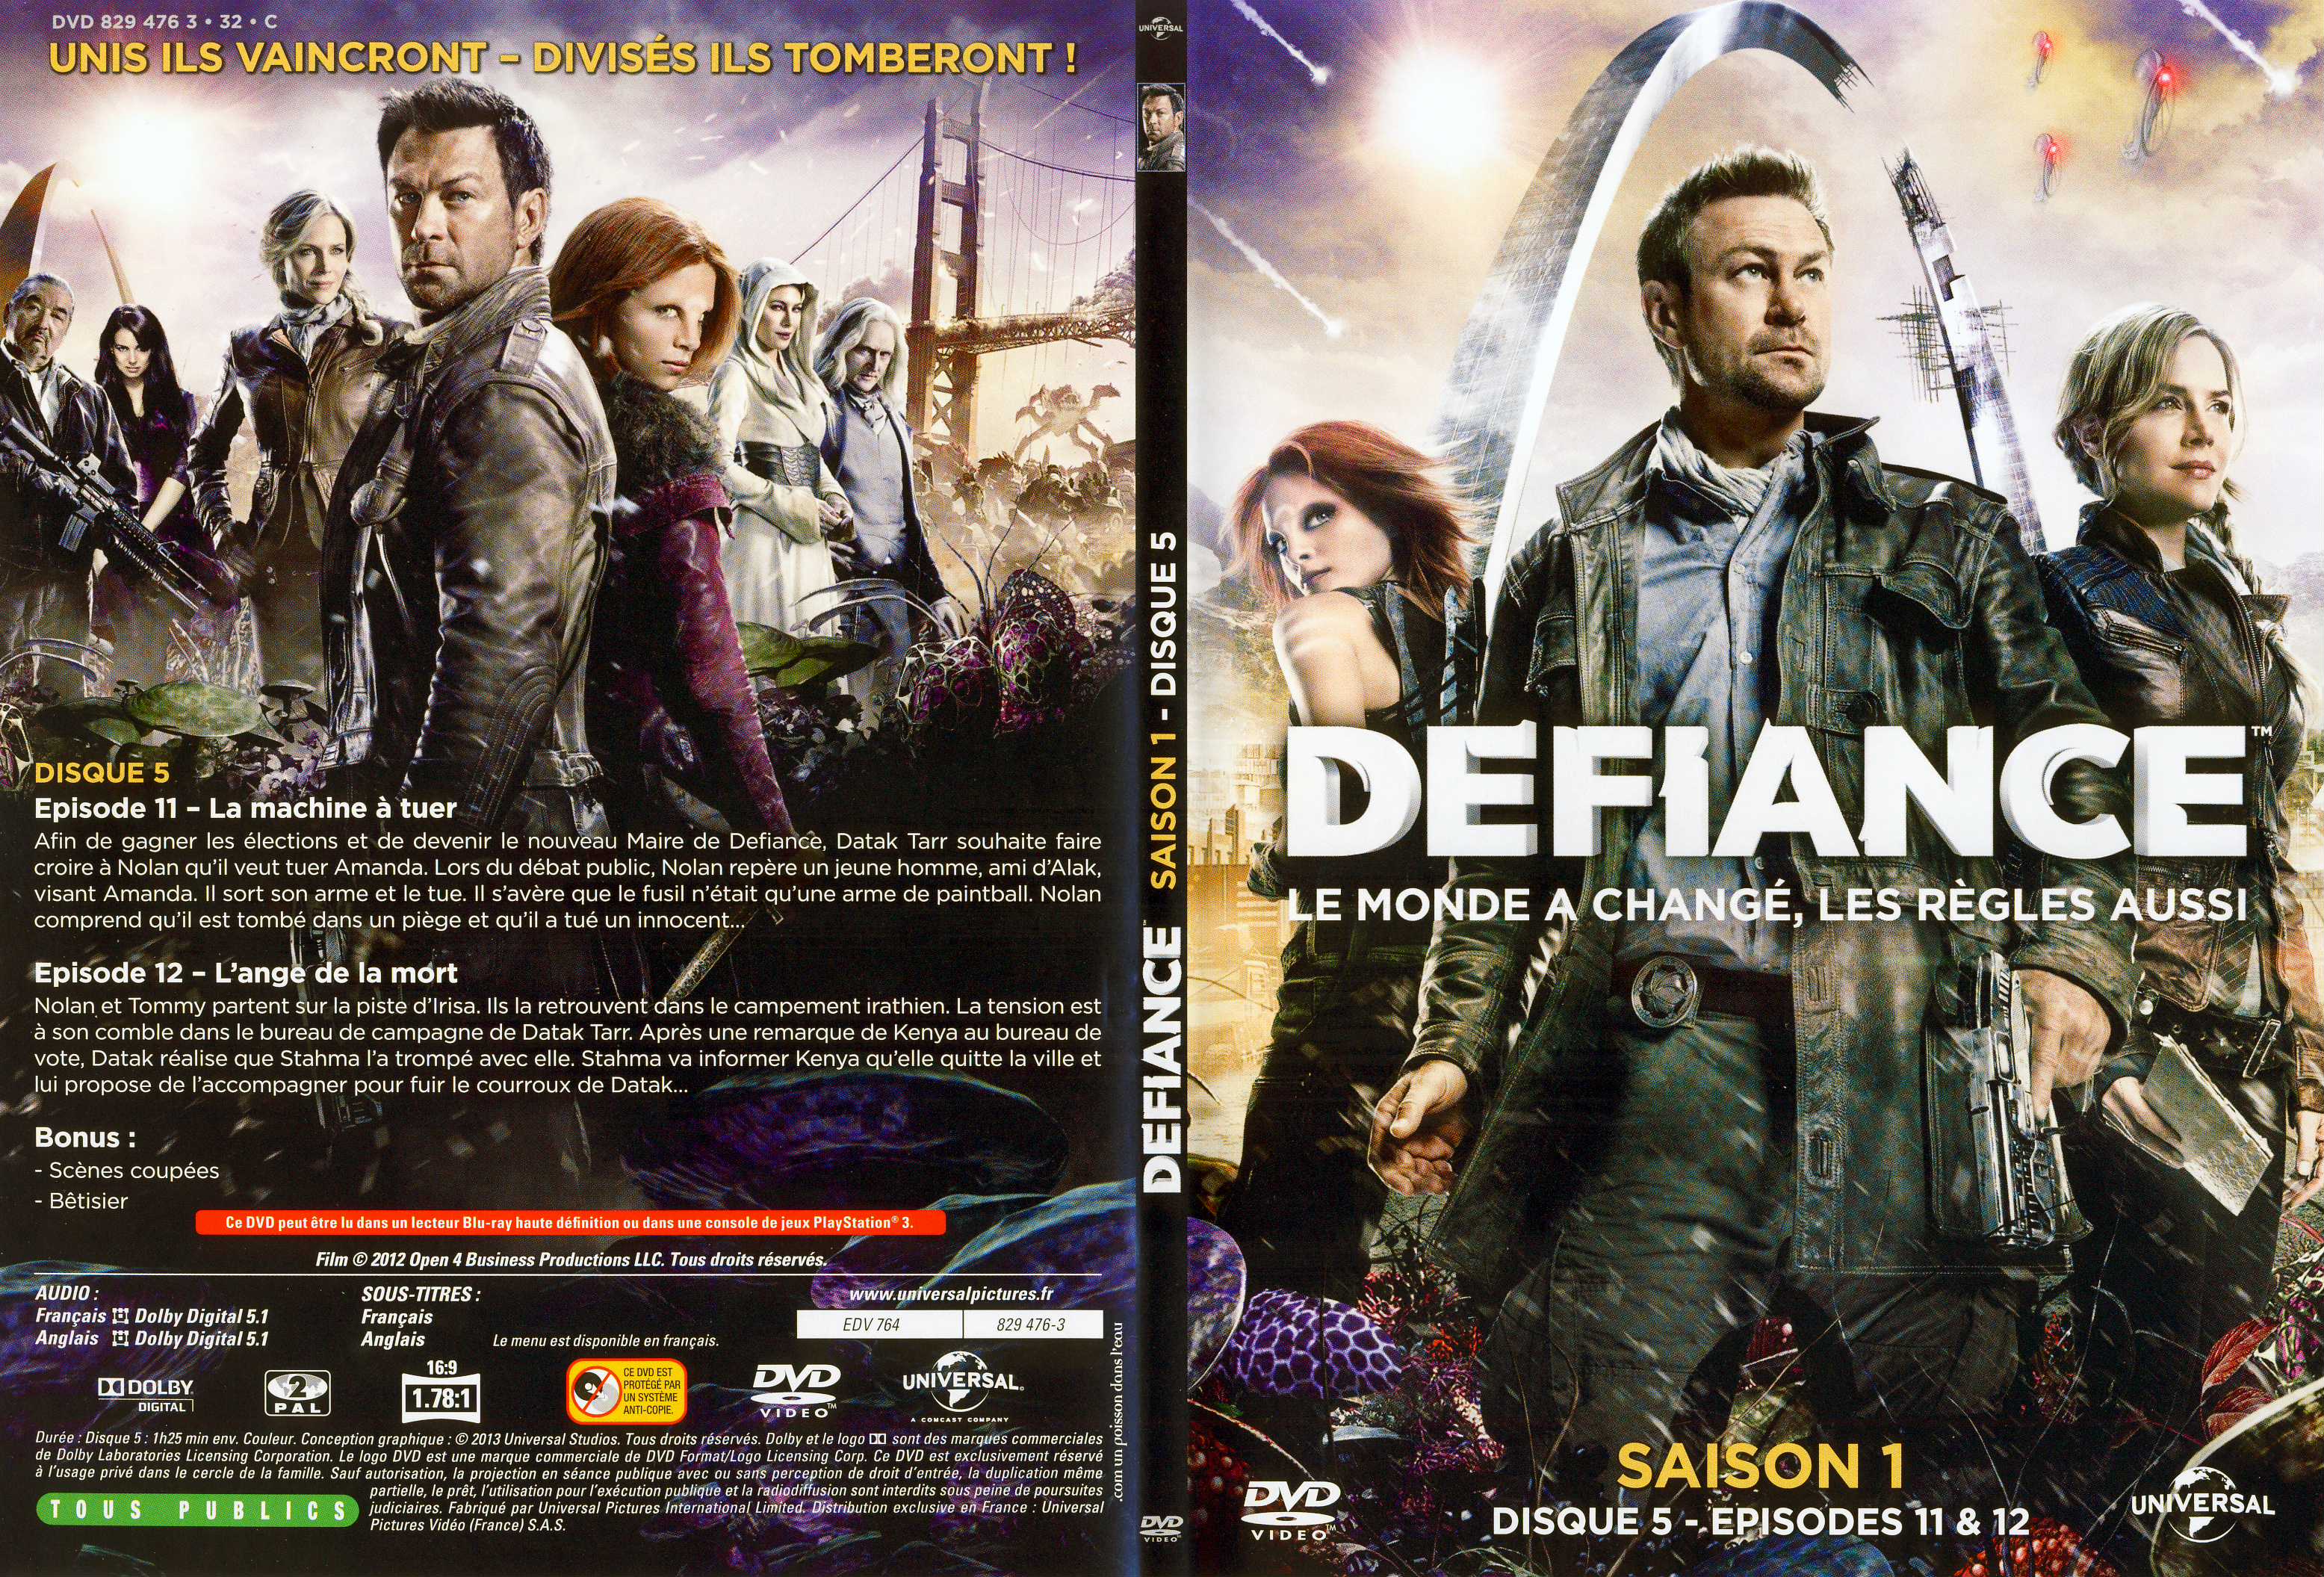 Jaquette DVD Defiance Saison 1 DVD 3